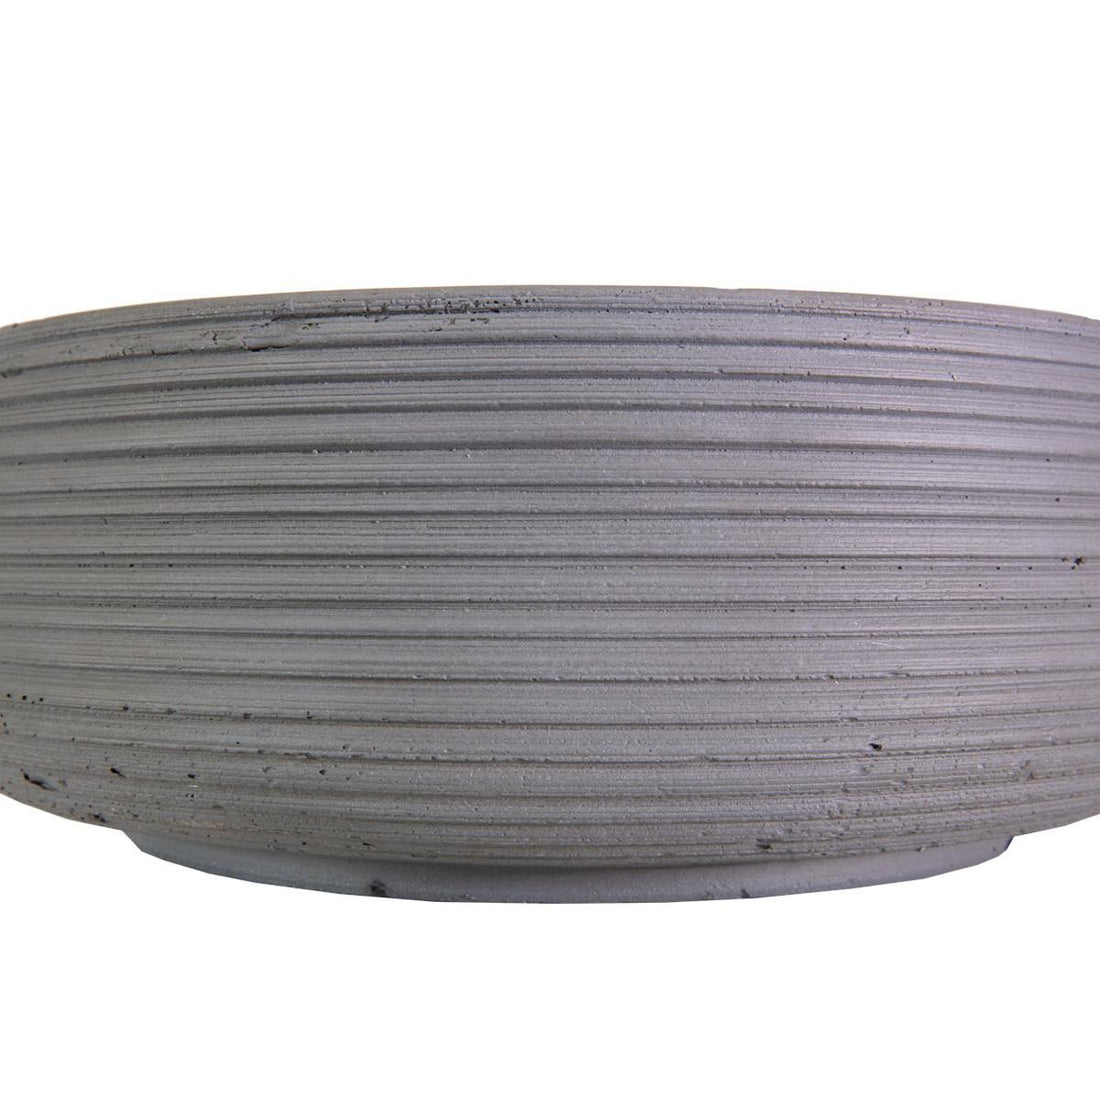 Large Ribbed Light Concrete Bowl Planter by IDEALIST Lite - citiplants.com